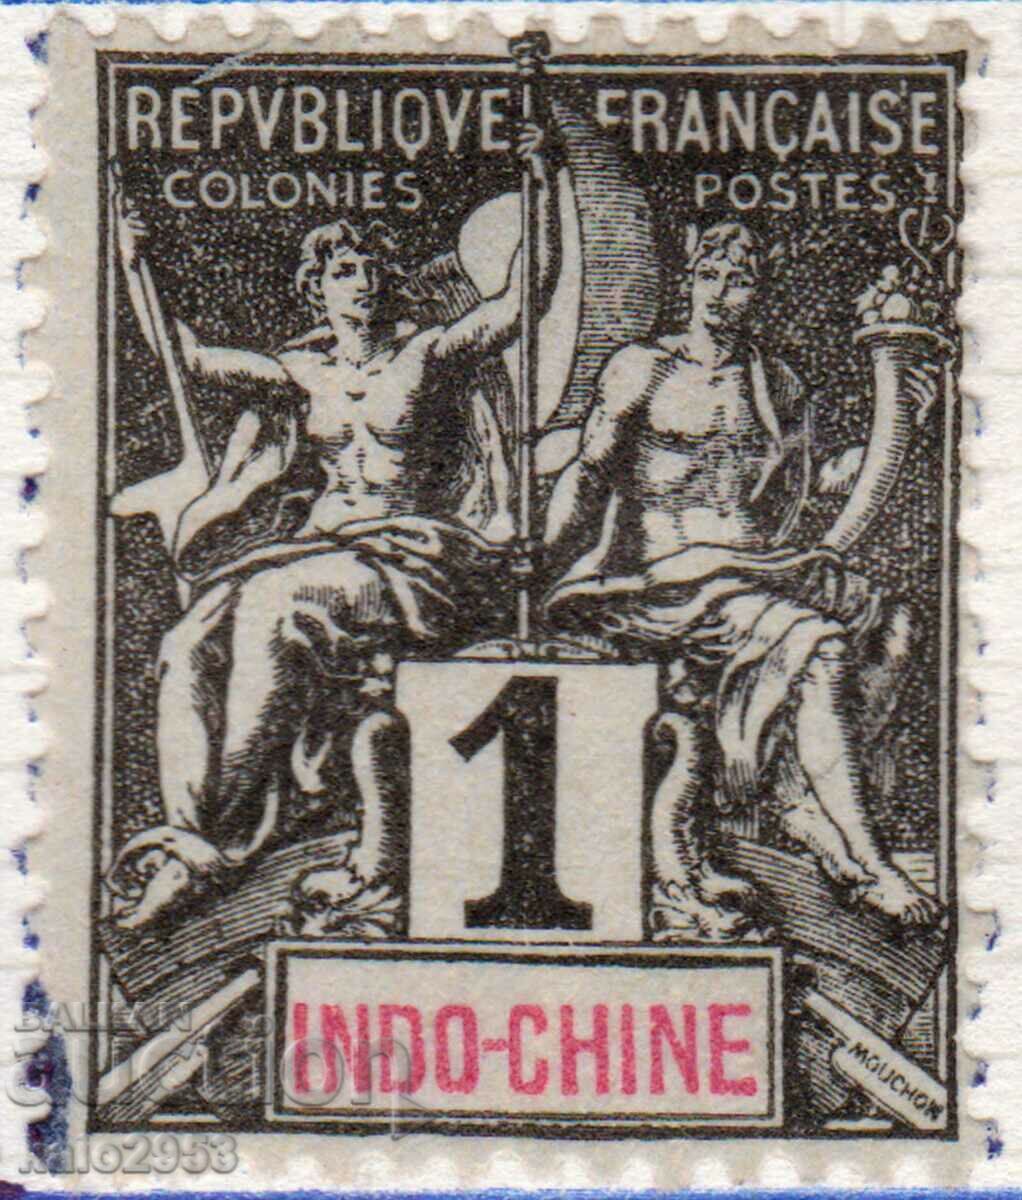 Γαλλική Ινδική Κίνα-1892-Τακτική-Αποικιακή Αλληγορία,MLH